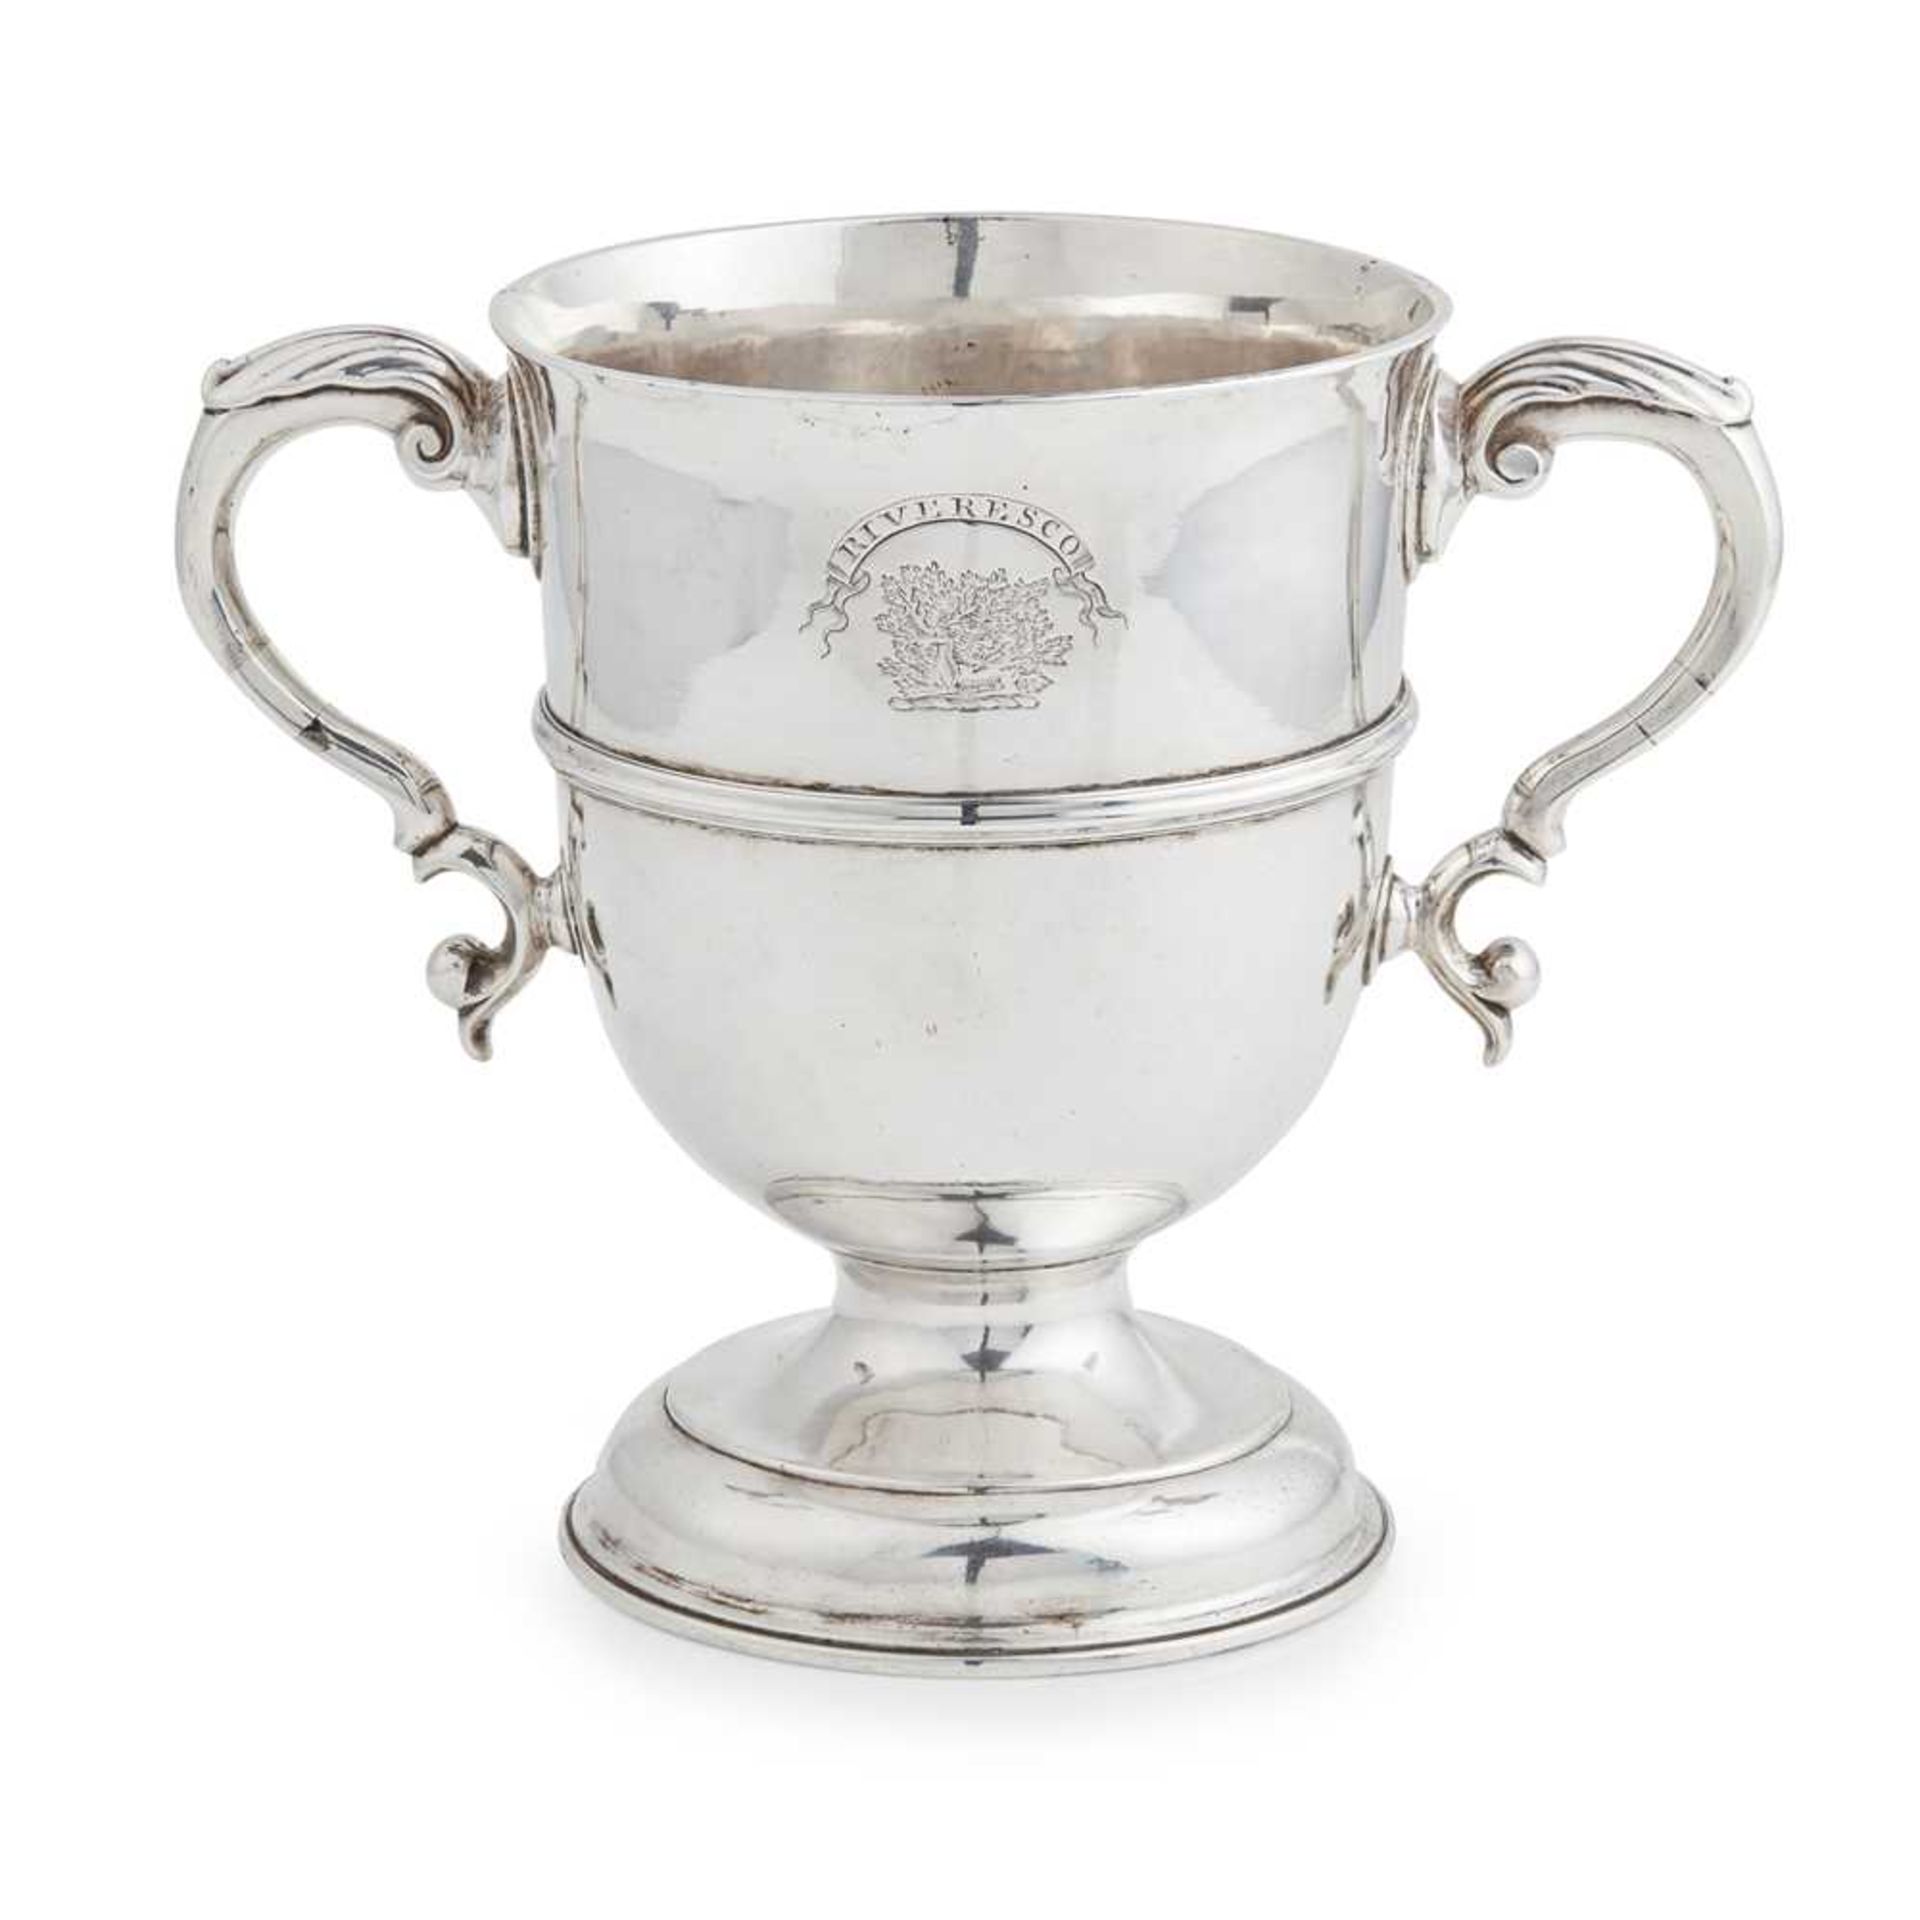 A GEORGE III TWIN HANDLED CUP JAMES WELSH, EDINBURGH 1766